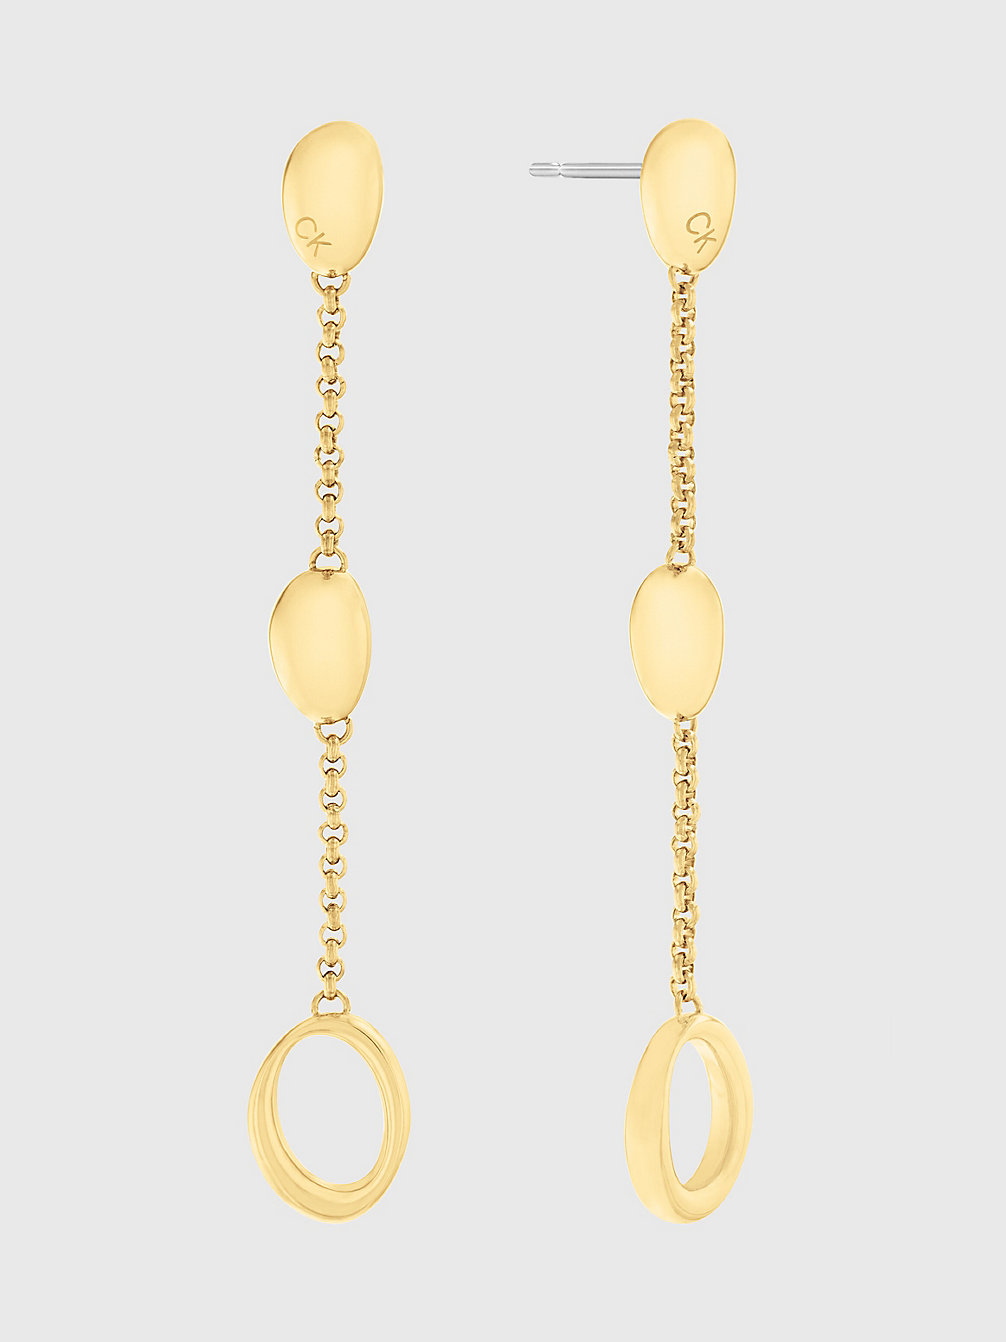 GOLD Ohrringe - Playful Organic Shapes undefined Damen Calvin Klein